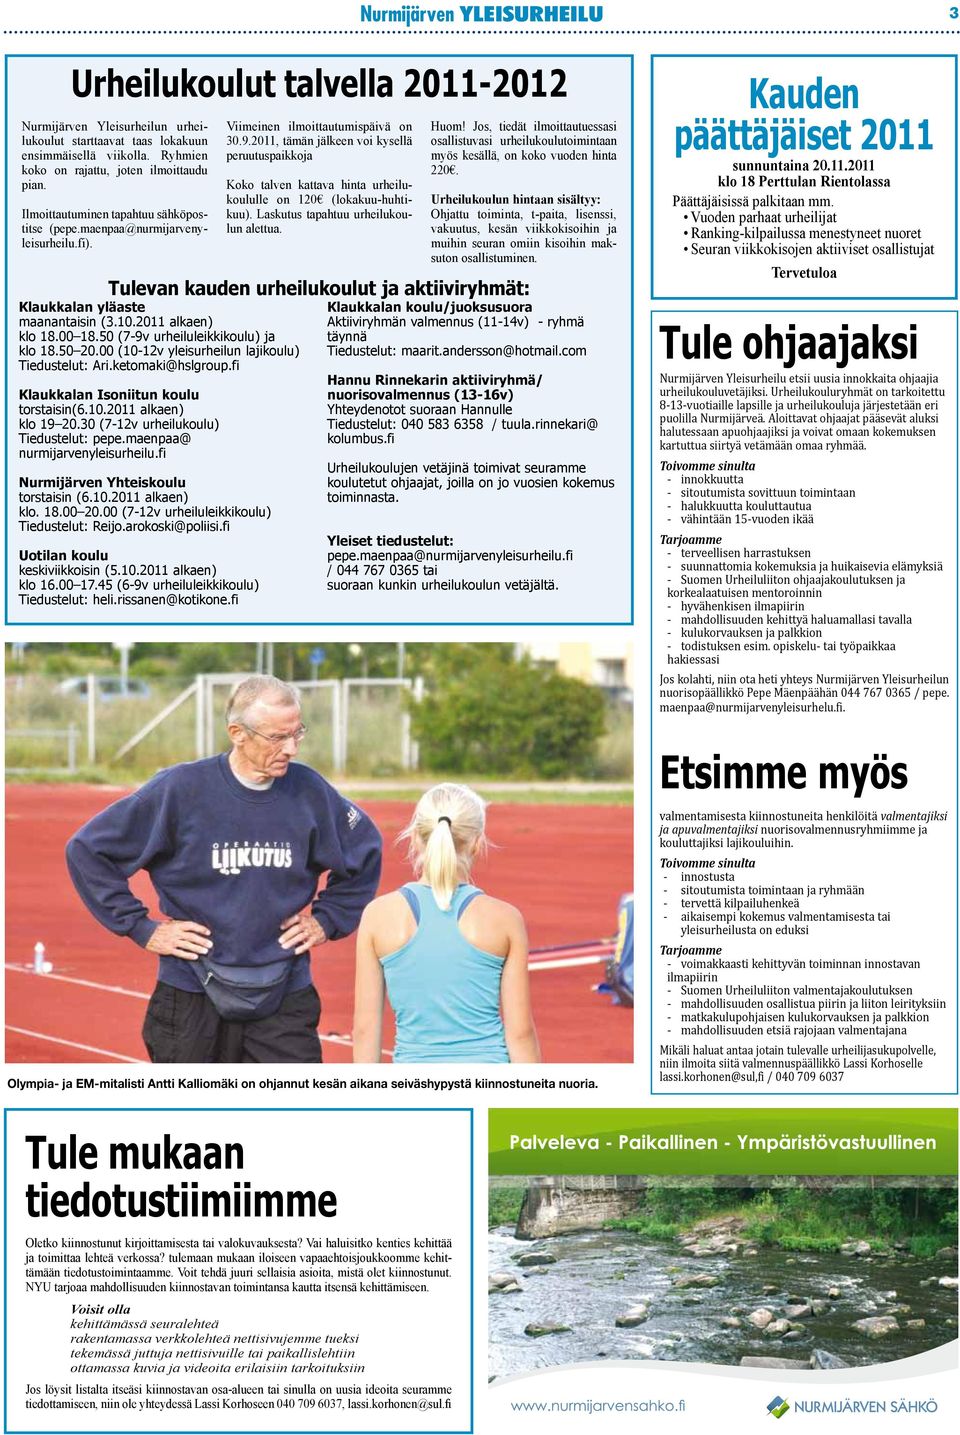 00 (10-12v yleisurheilun lajikoulu) Tiedustelut: Ari.ketomaki@hslgroup.fi Klaukkalan Isoniitun koulu torstaisin(6.10.2011 alkaen) klo 19 20.30 (7-12v urheilukoulu) Tiedustelut: pepe.